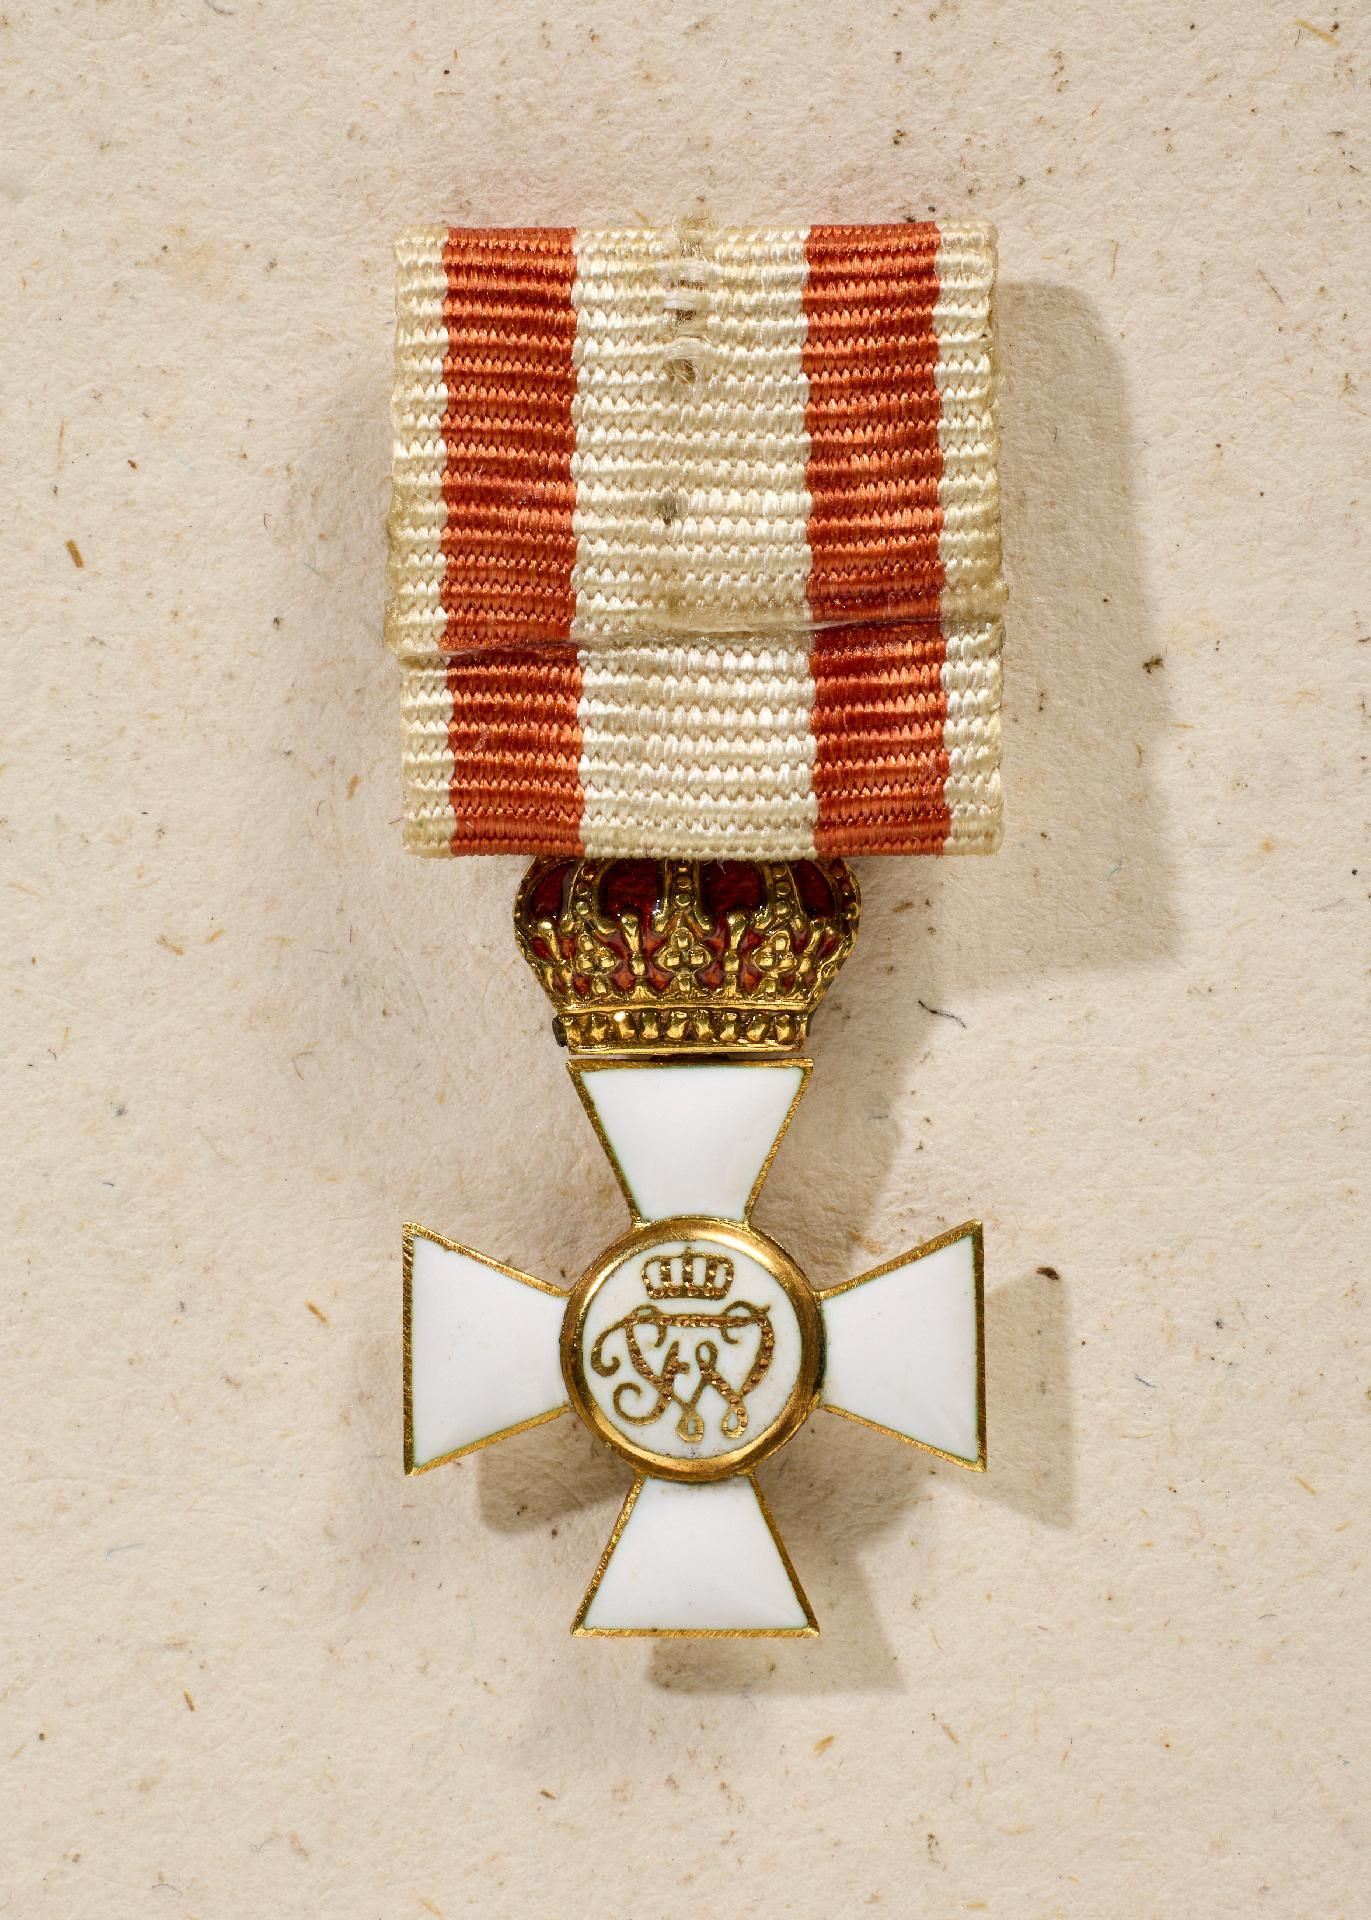 Preußen : Miniatur des Roten Adler Ordens 3. Klasse mit Schleife und Krone. - Bild 2 aus 2